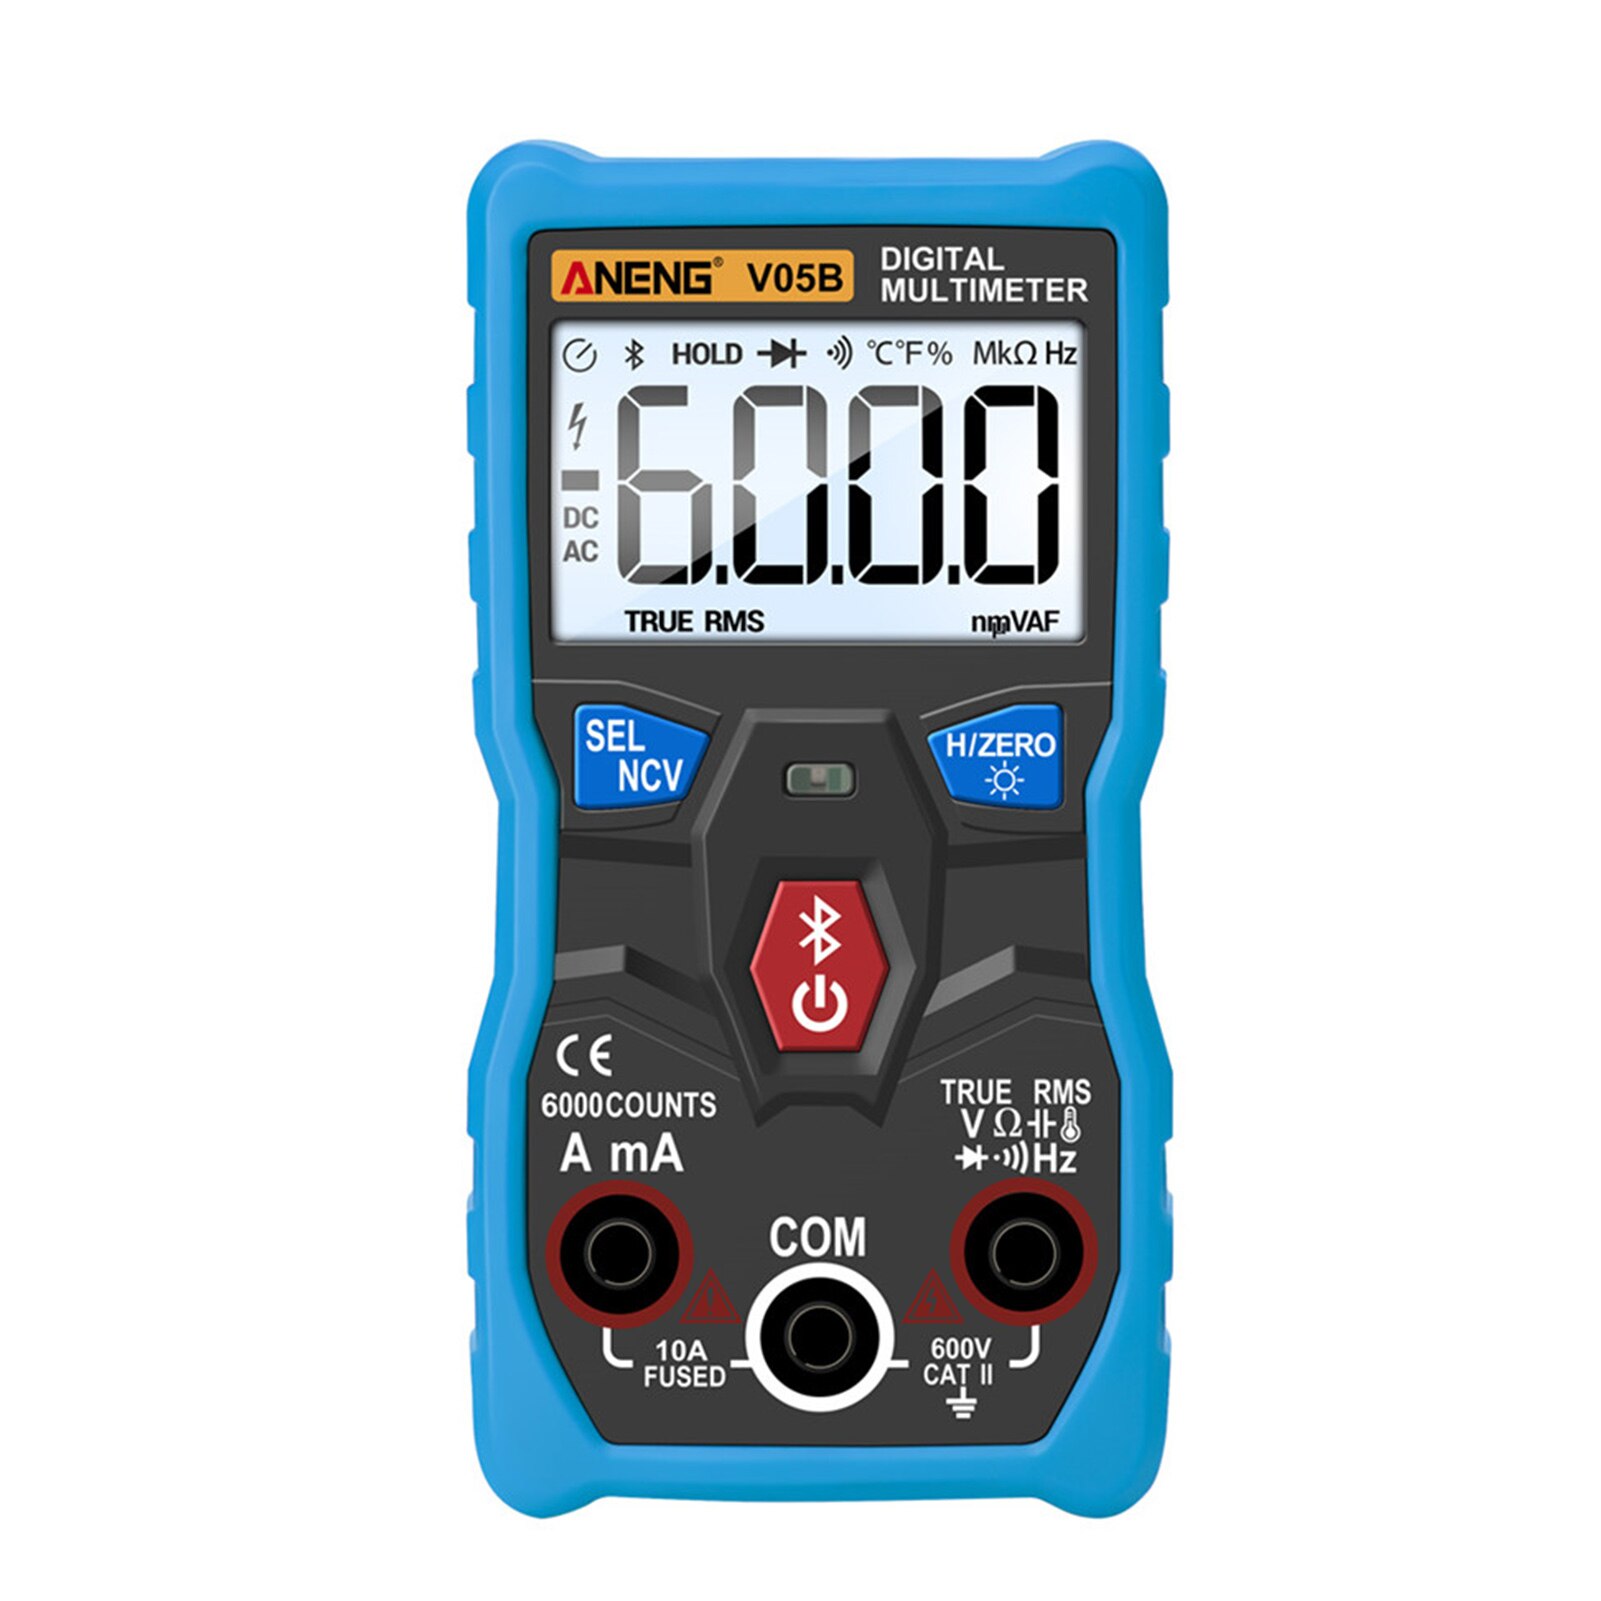 Digital multimeter elektriske instrumenter analyse app kontrol bluetooth trådløs måling håndholdt tester kapacitans abs: Blå